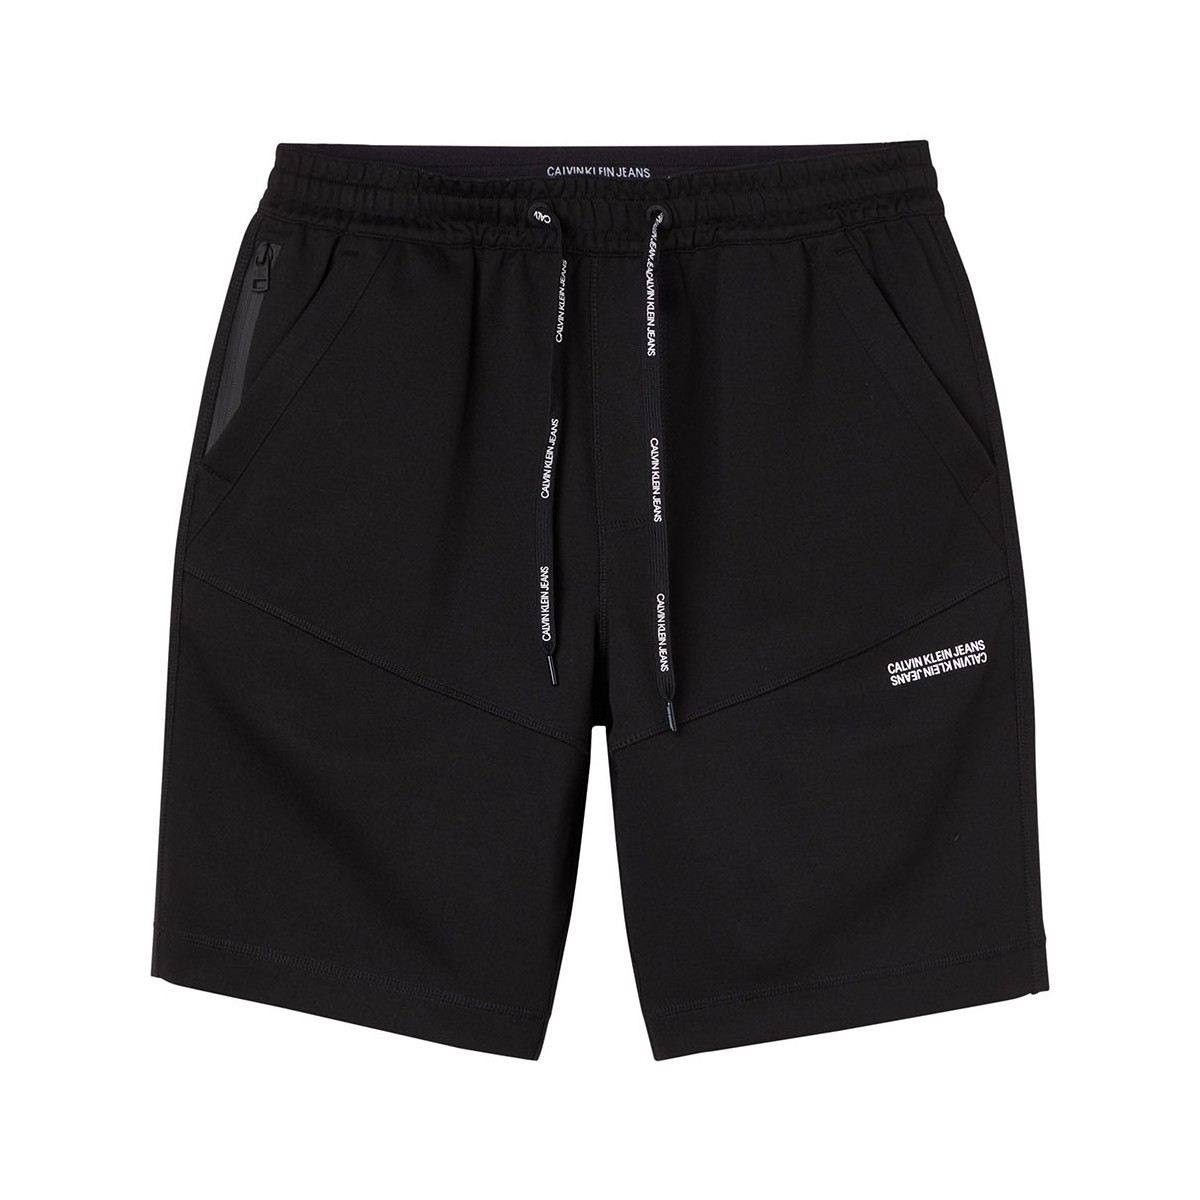 Vêtements Homme Shorts / Bermudas Calvin Klein Jeans Short  ref 52125 BEH Noir Noir